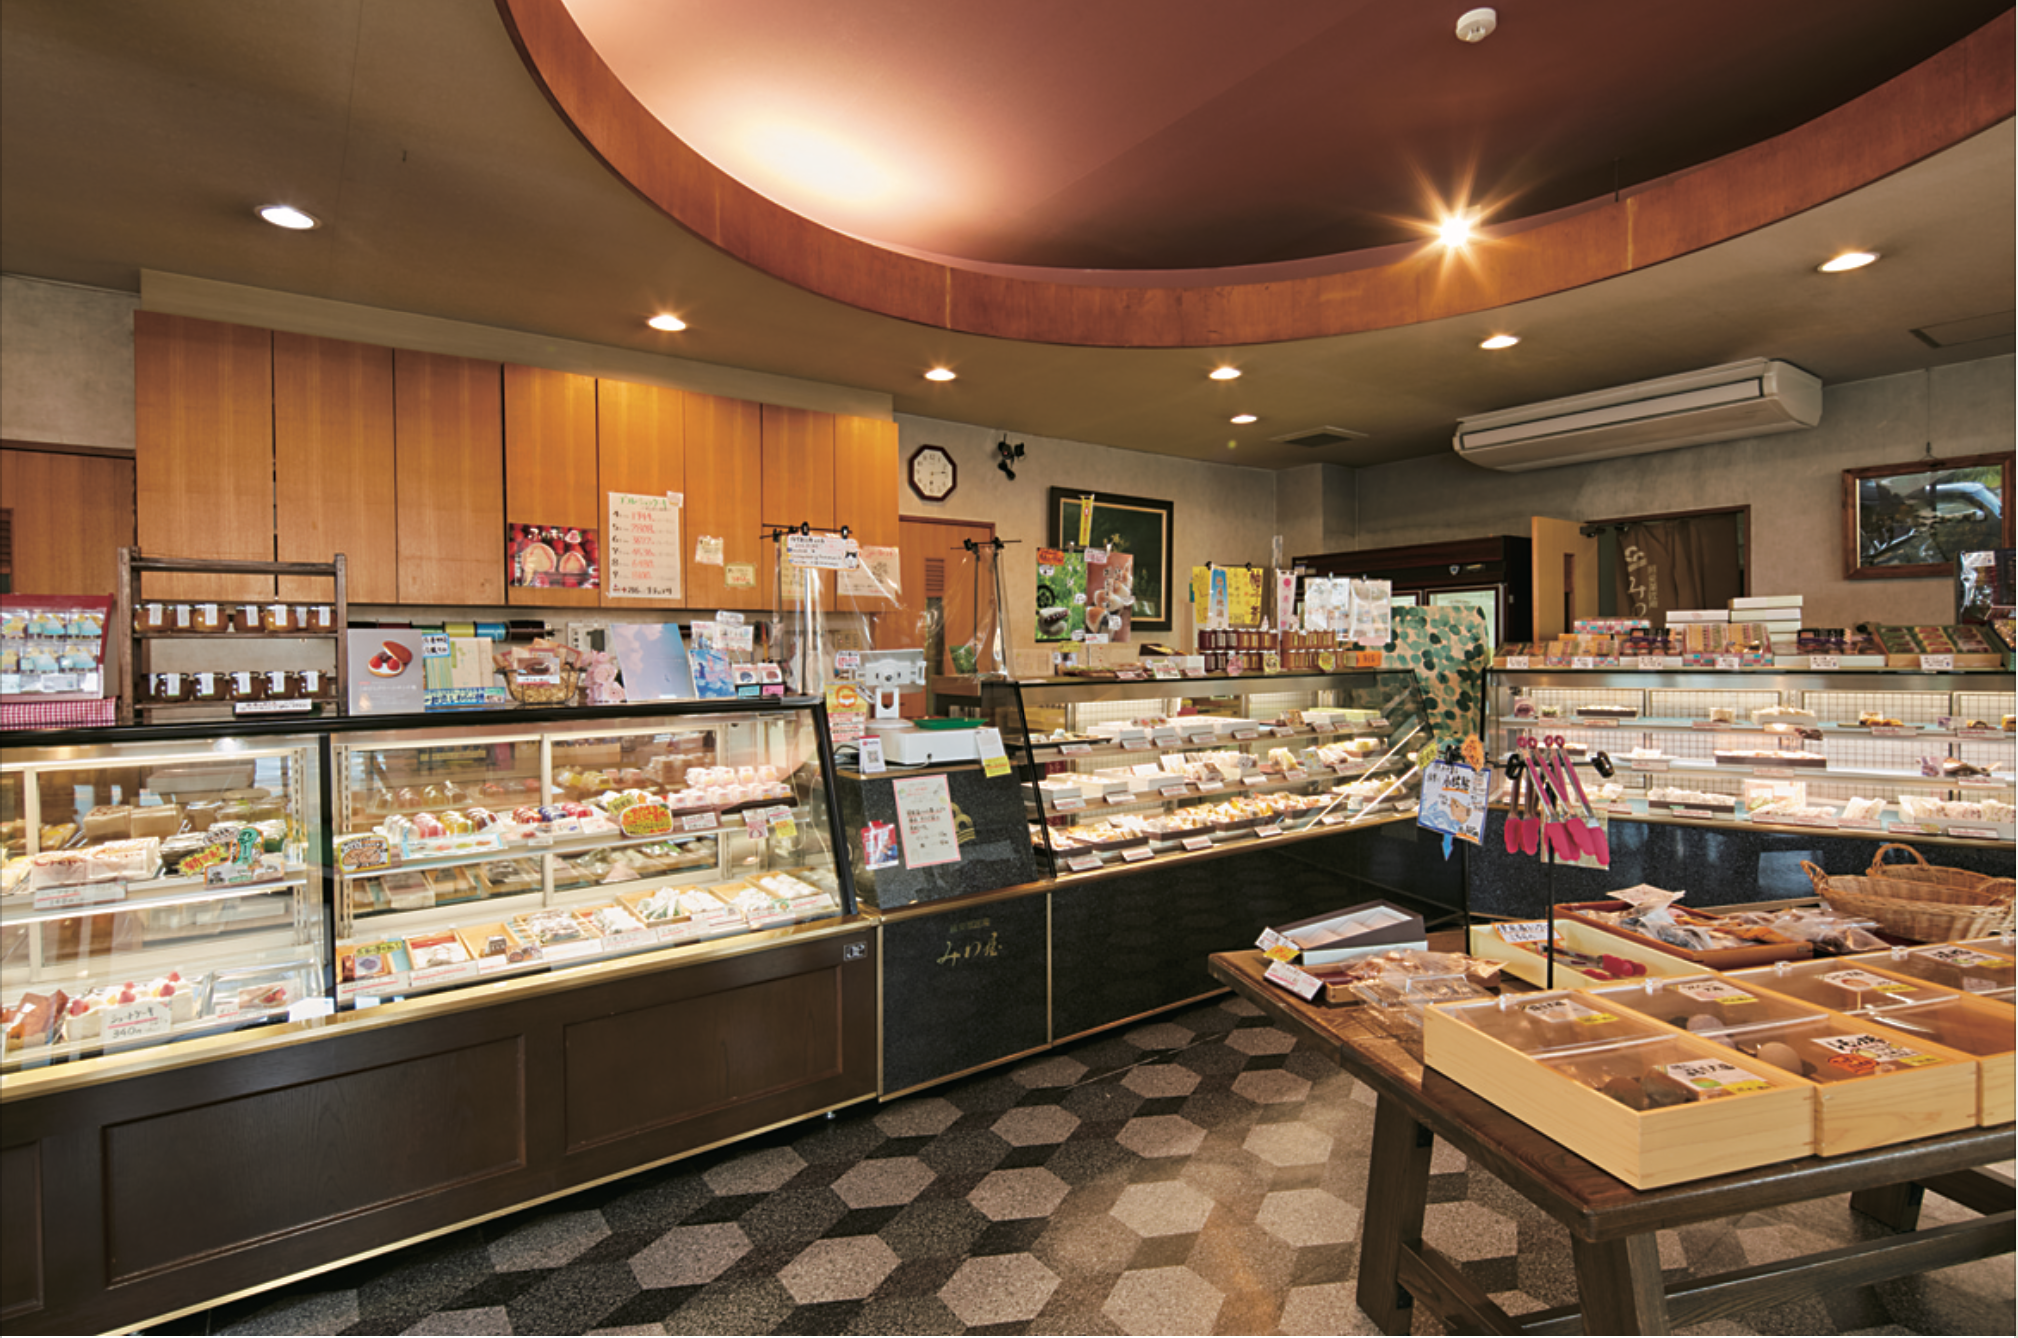 伝統的な和菓子から、和菓子の伝統と洋菓子のエッセンスを掛け合わせた目新しいお菓子まで、ワクワクする商品が並ぶ店内。